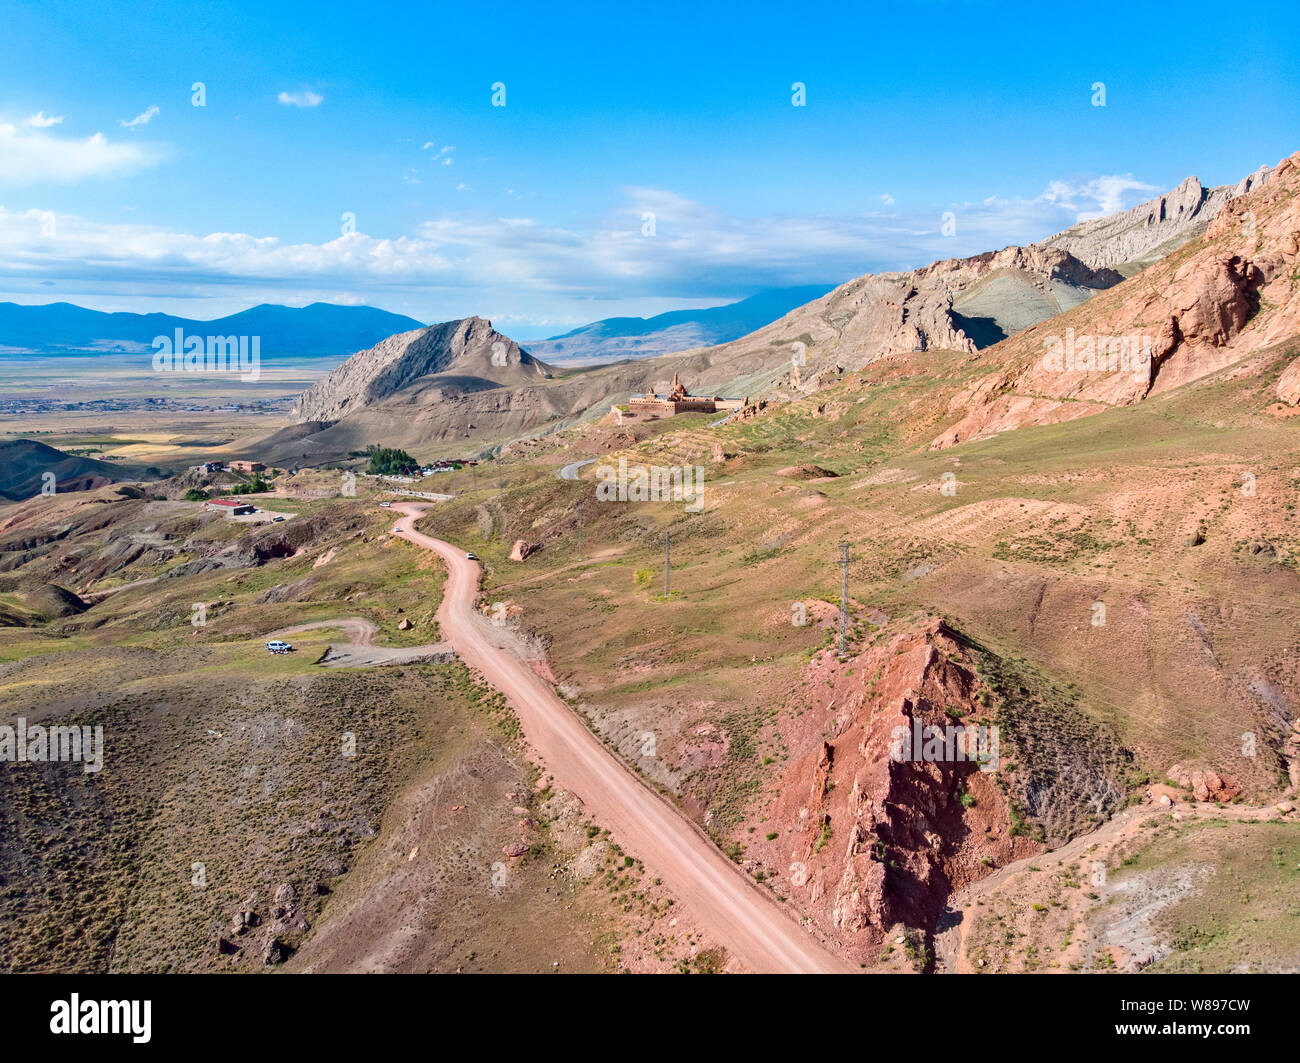 Vue aérienne de chemins de terre sur le plateau autour du Mont Ararat, chemins de terre et de paysages à couper le souffle, routes sinueuses, pics rocheux et les collines. La Turquie Banque D'Images